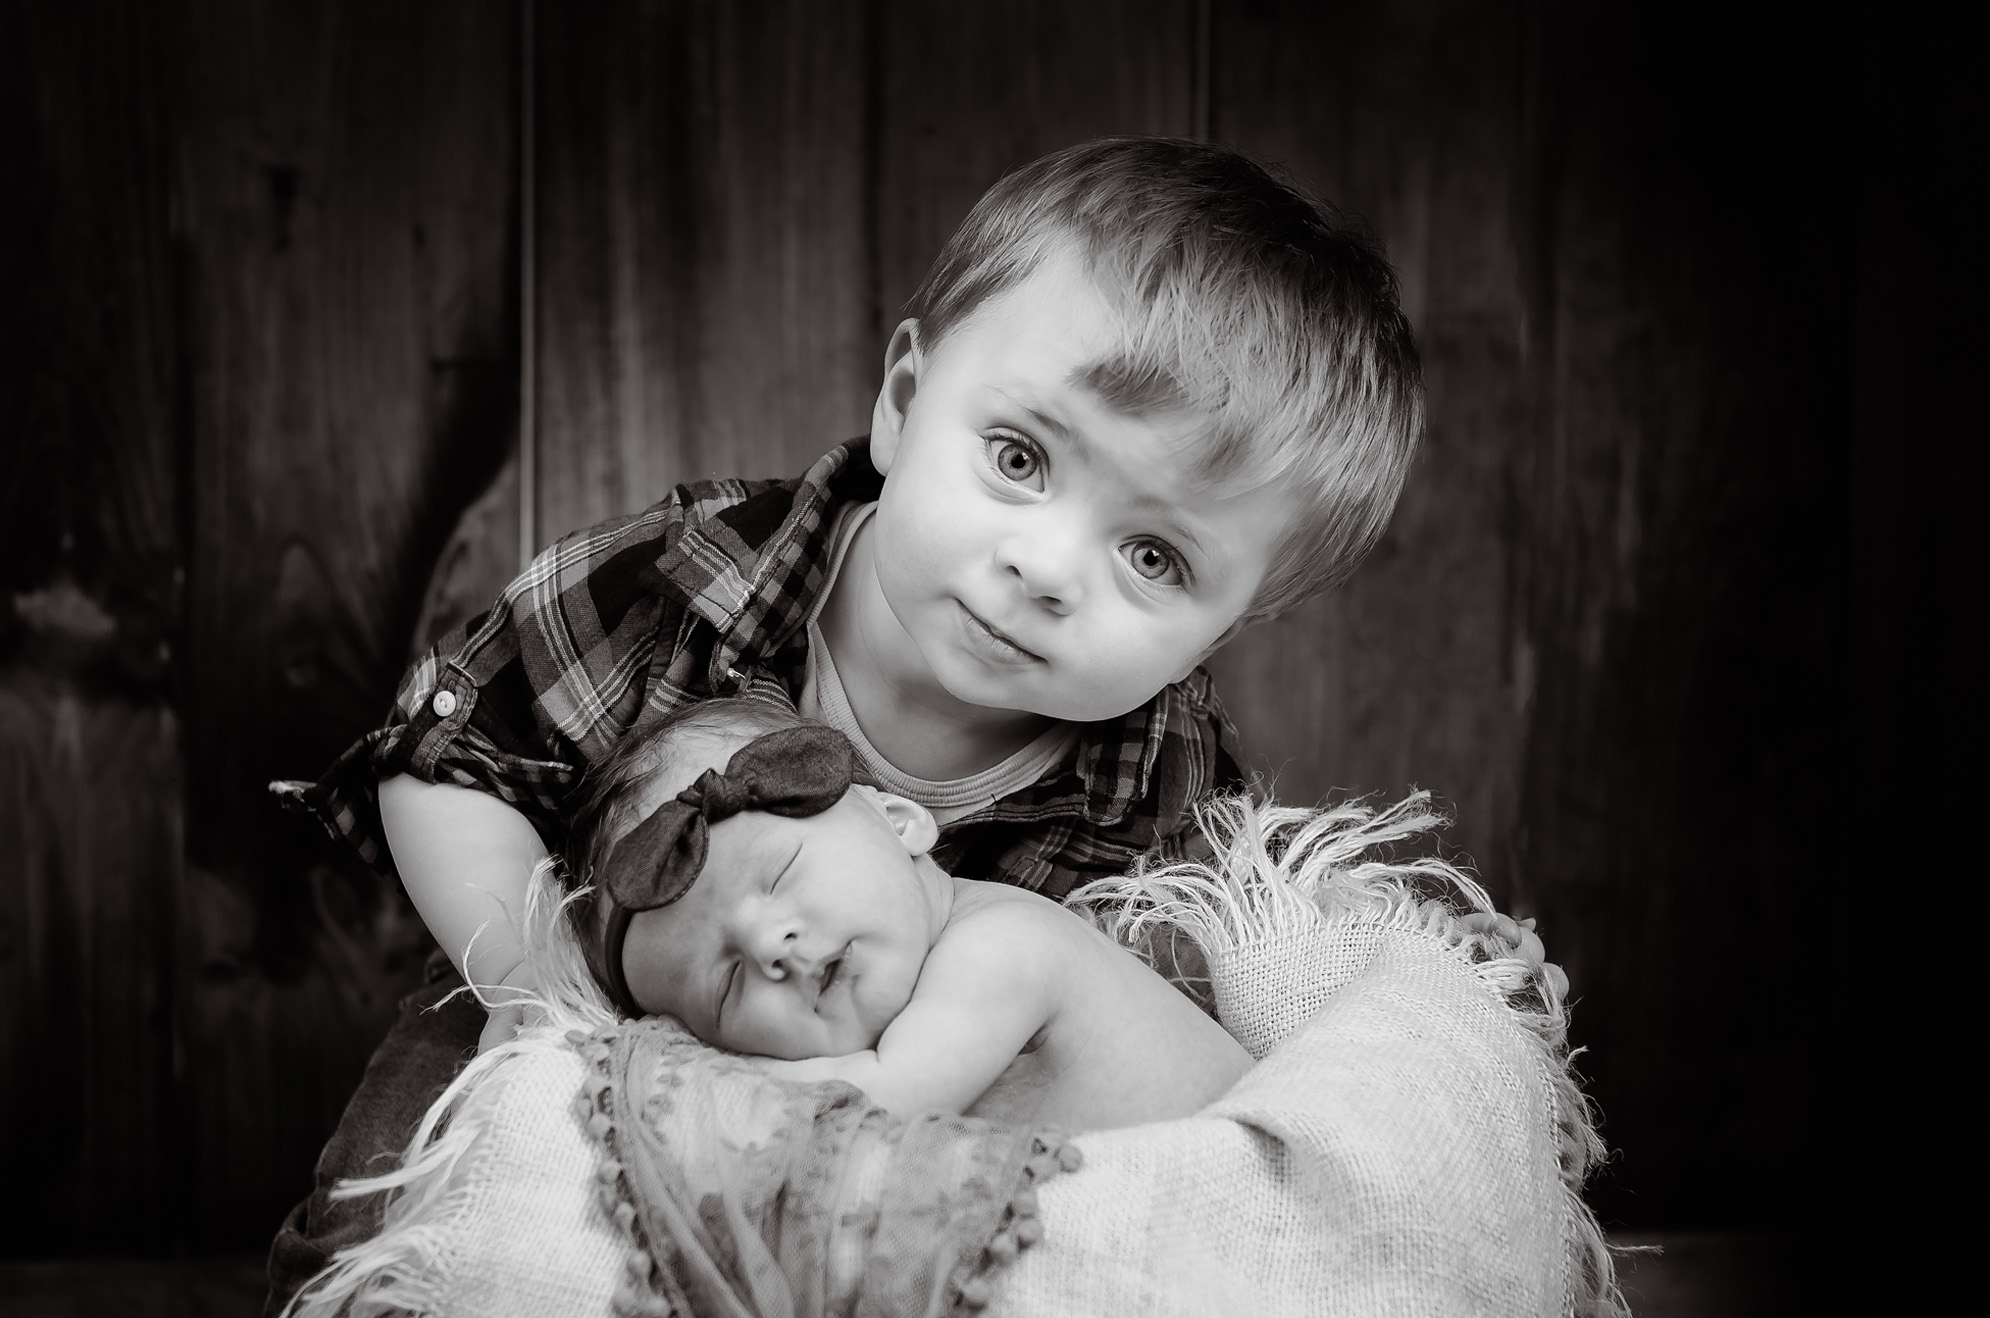 Abbott 1 - Portfolio: Infant Photography